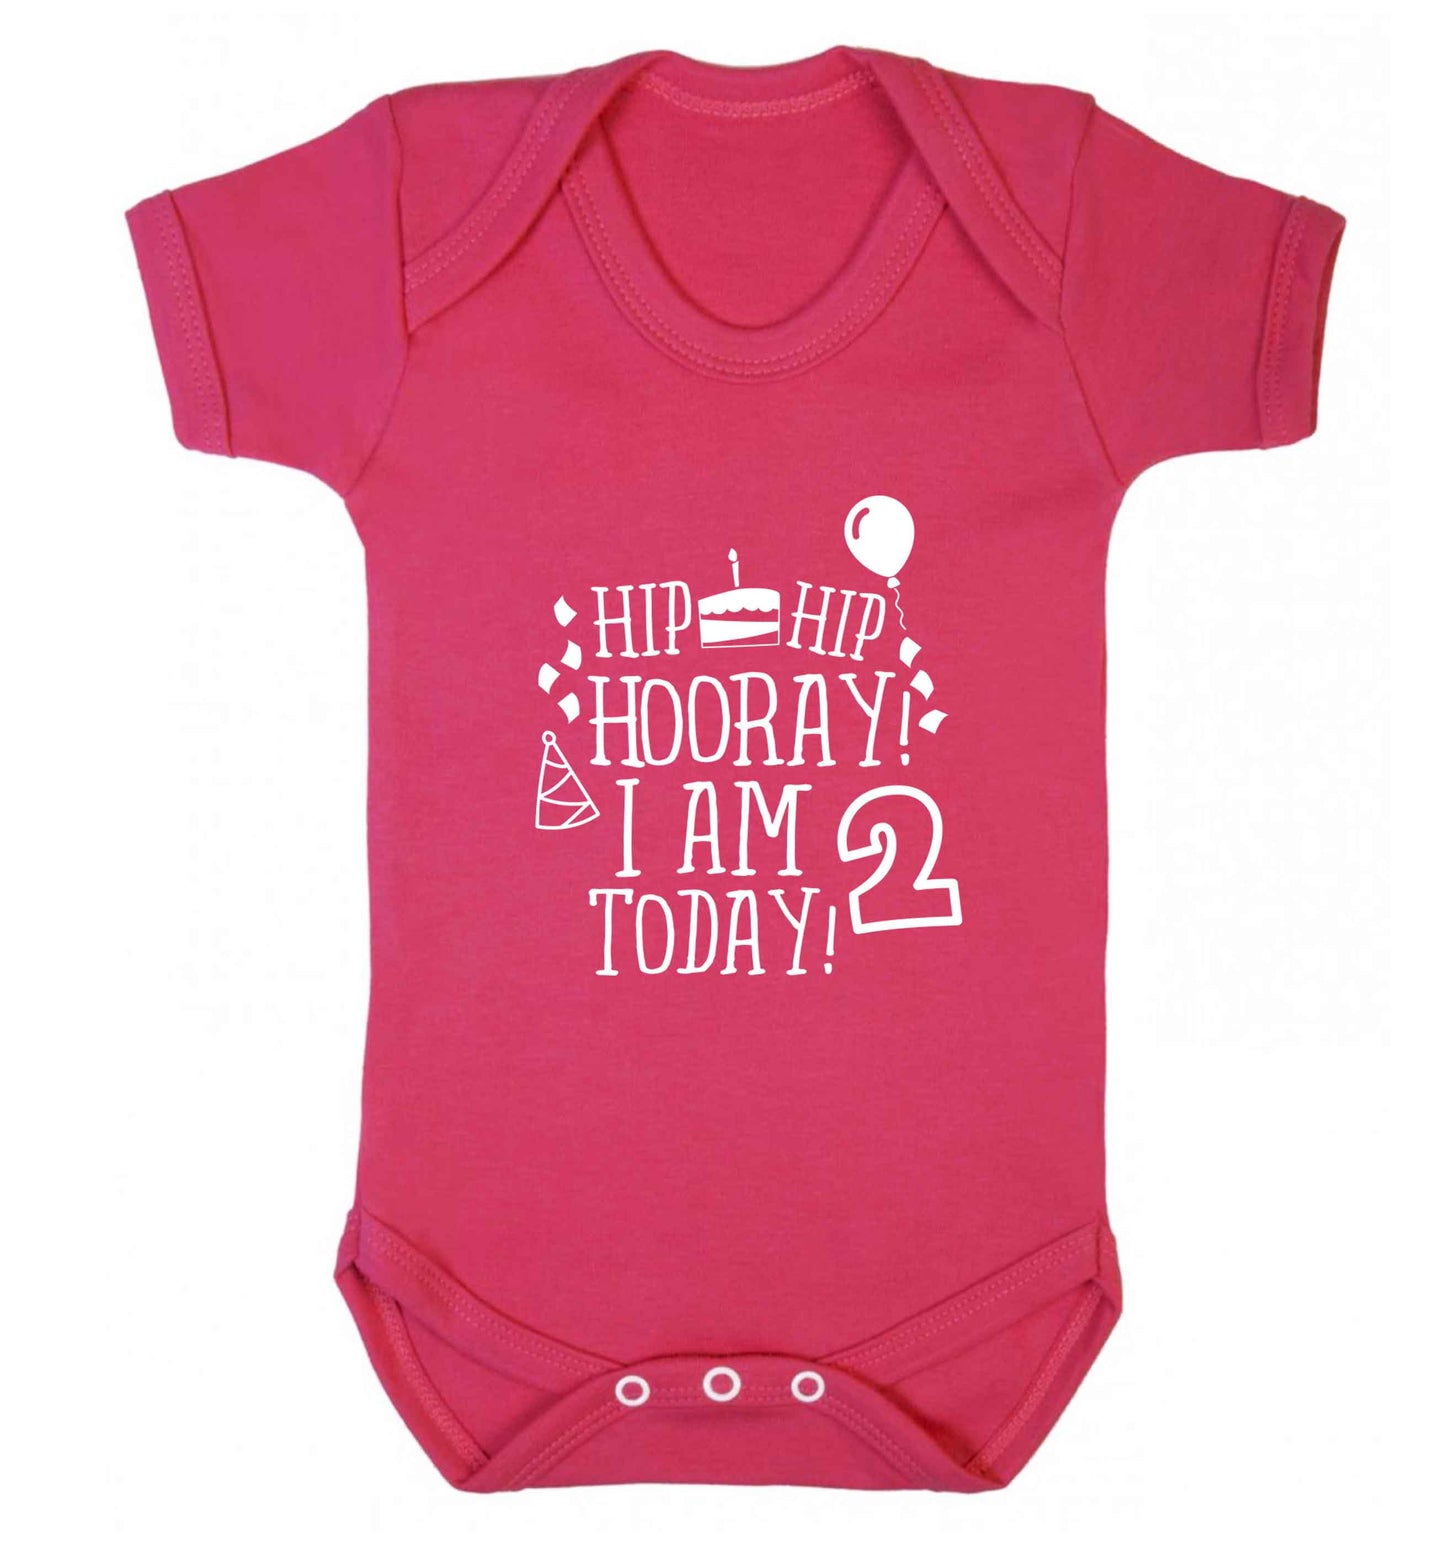 I'm 2 Today baby vest dark pink 18-24 months